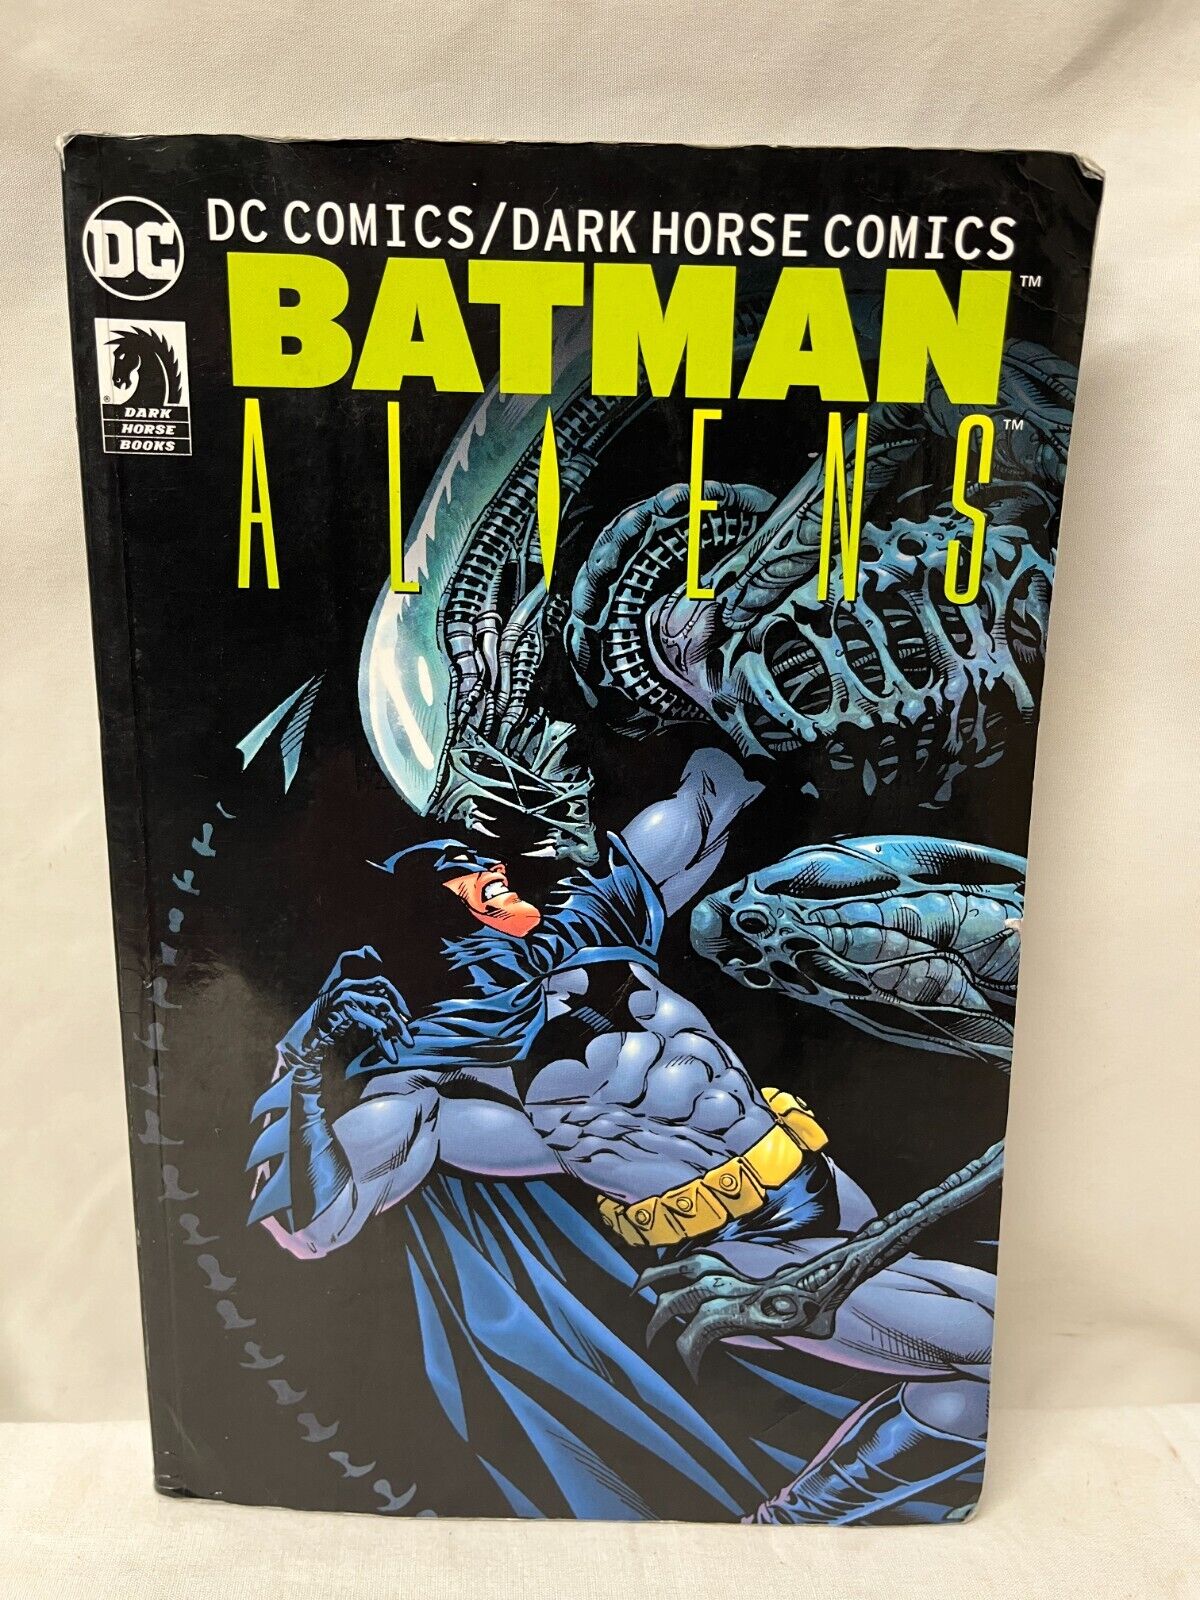 DC Comics Dark Horse Comics Aliens Trade Paperback TPB Superman Batman Predator